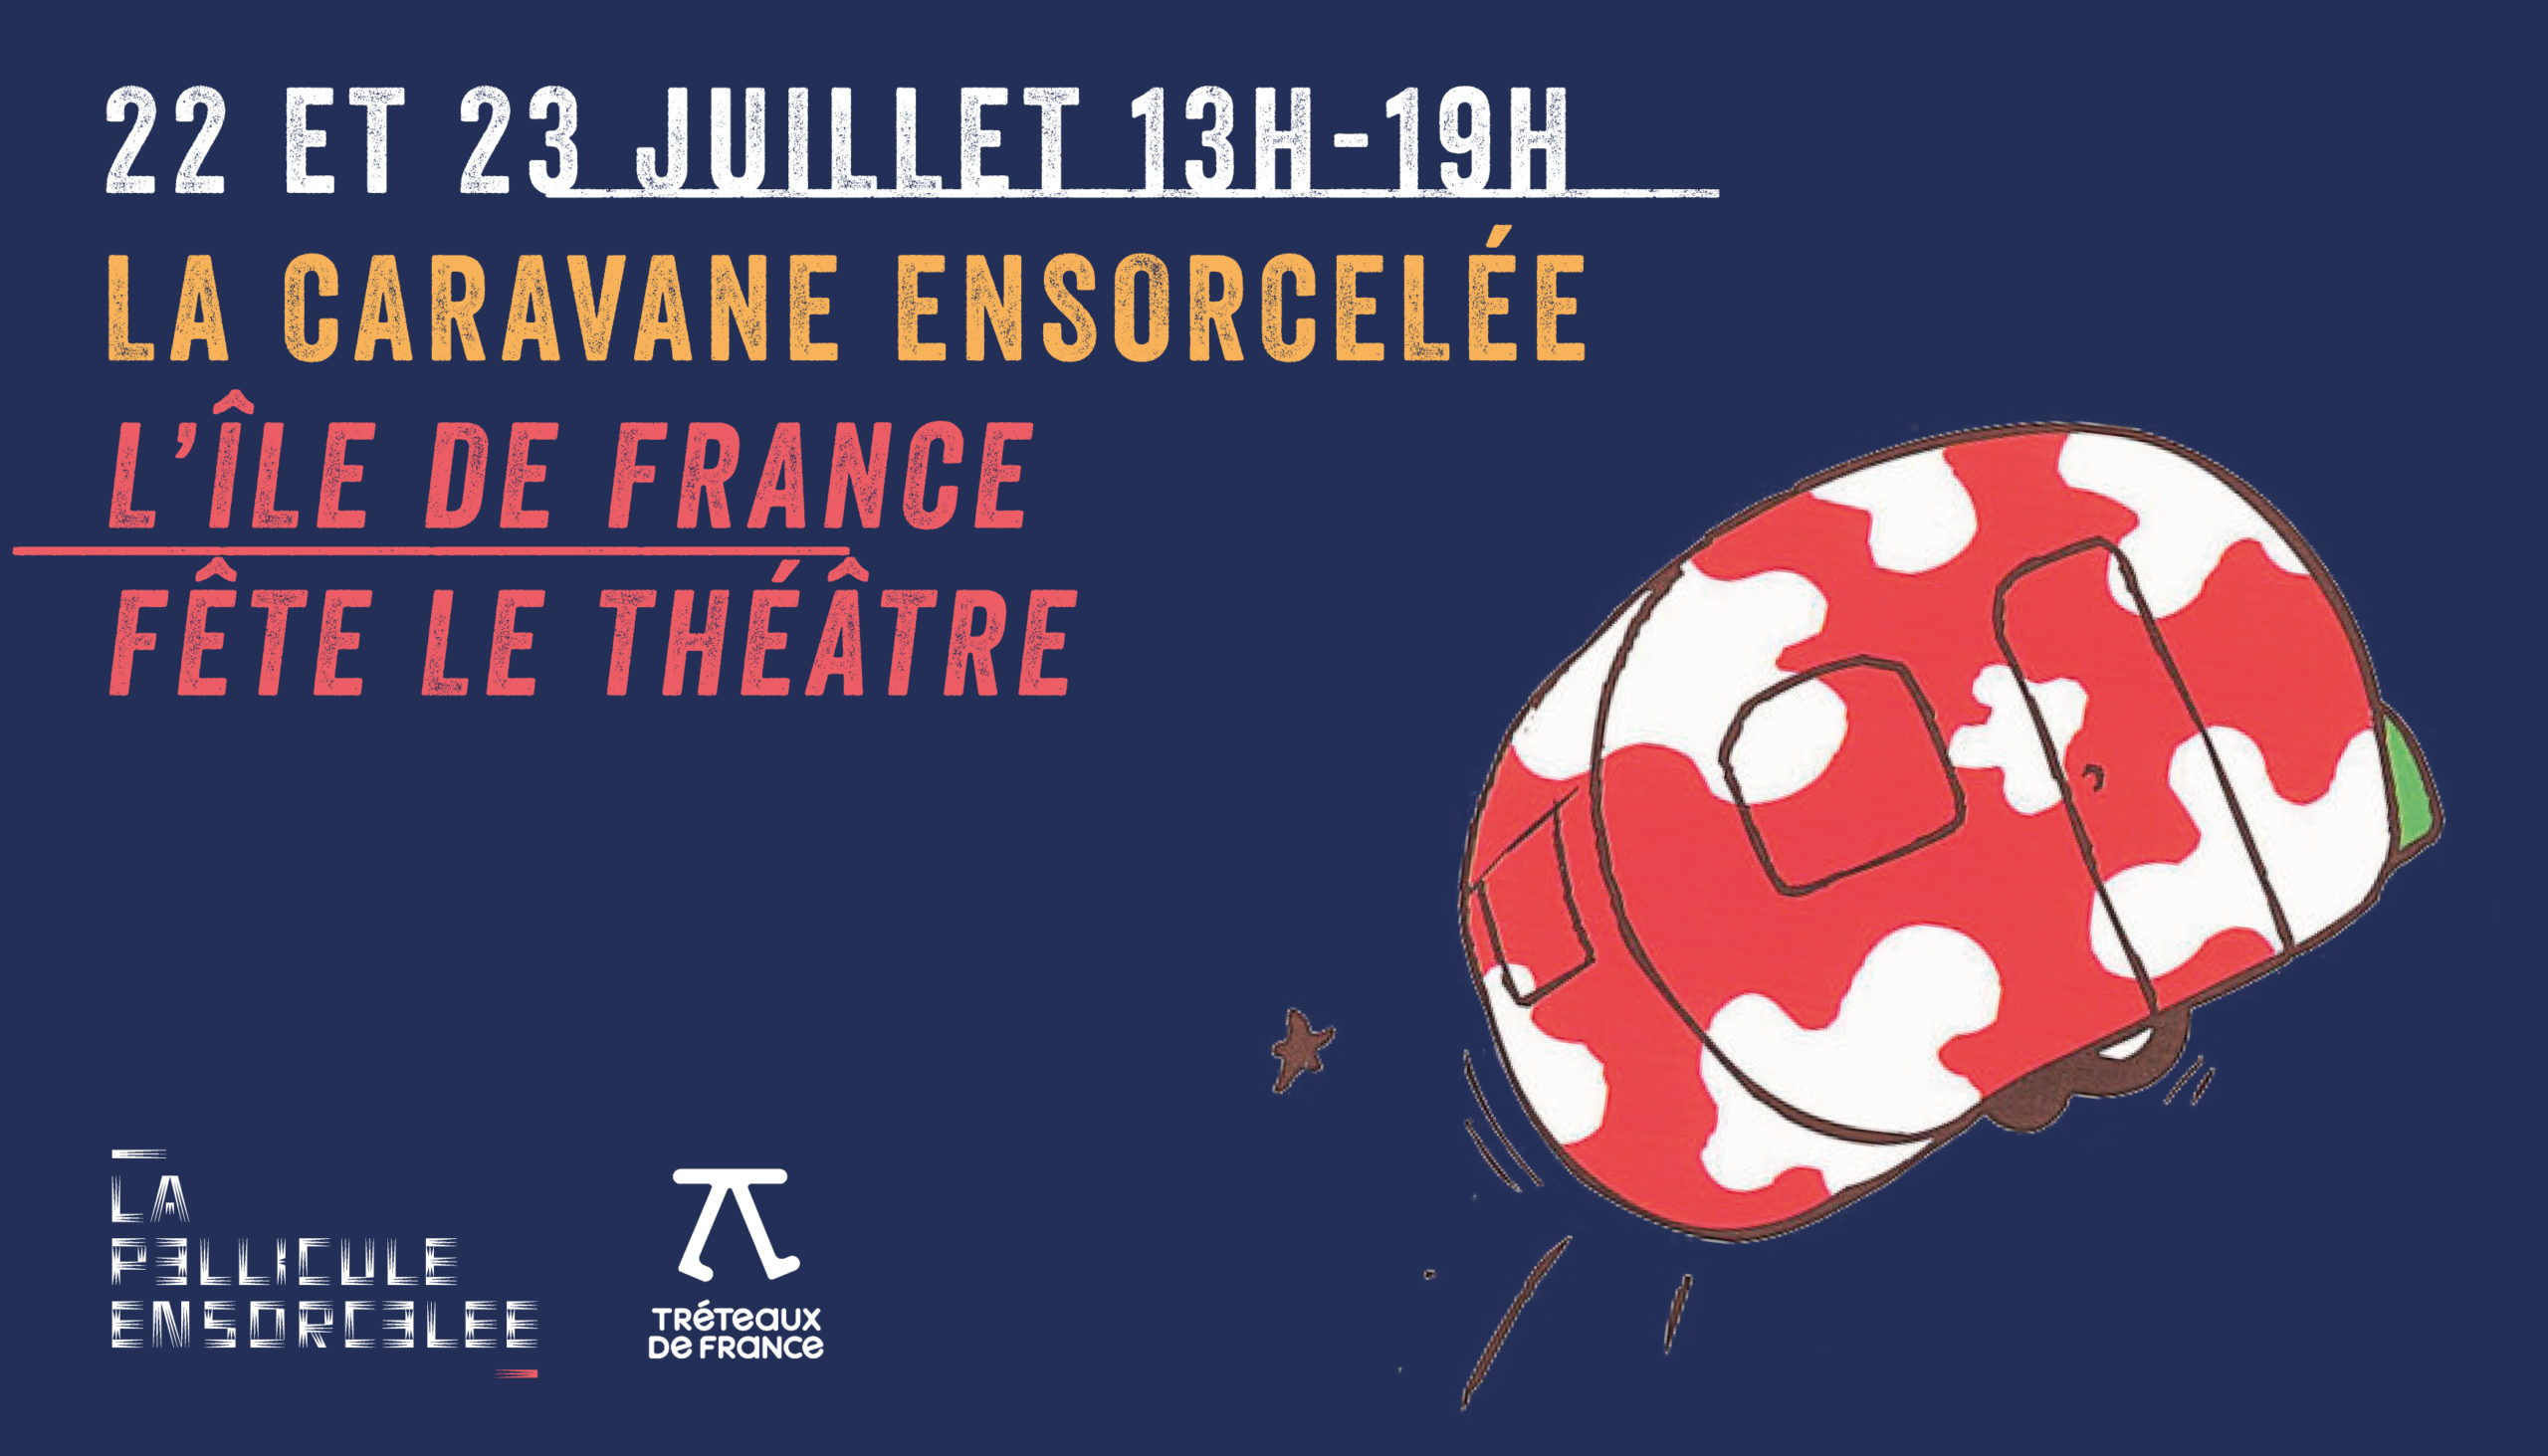 Bannière - La Caravane ensorcelée - L'Île de France fête le théâtre - Créteil